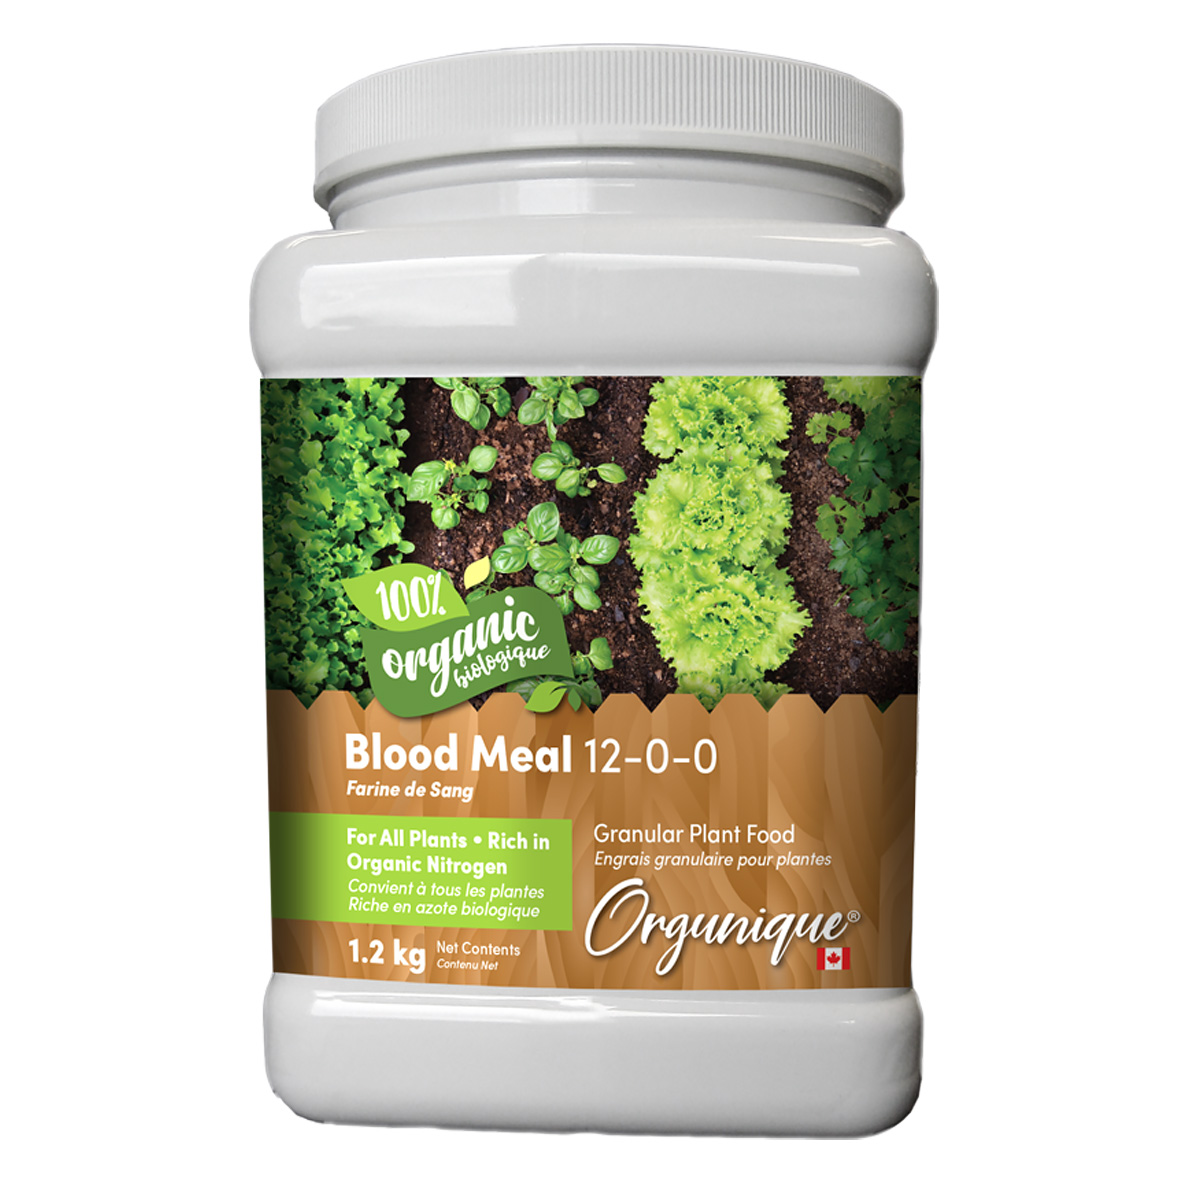 Orgunique Blood Meal 12-0-0 1.2kg